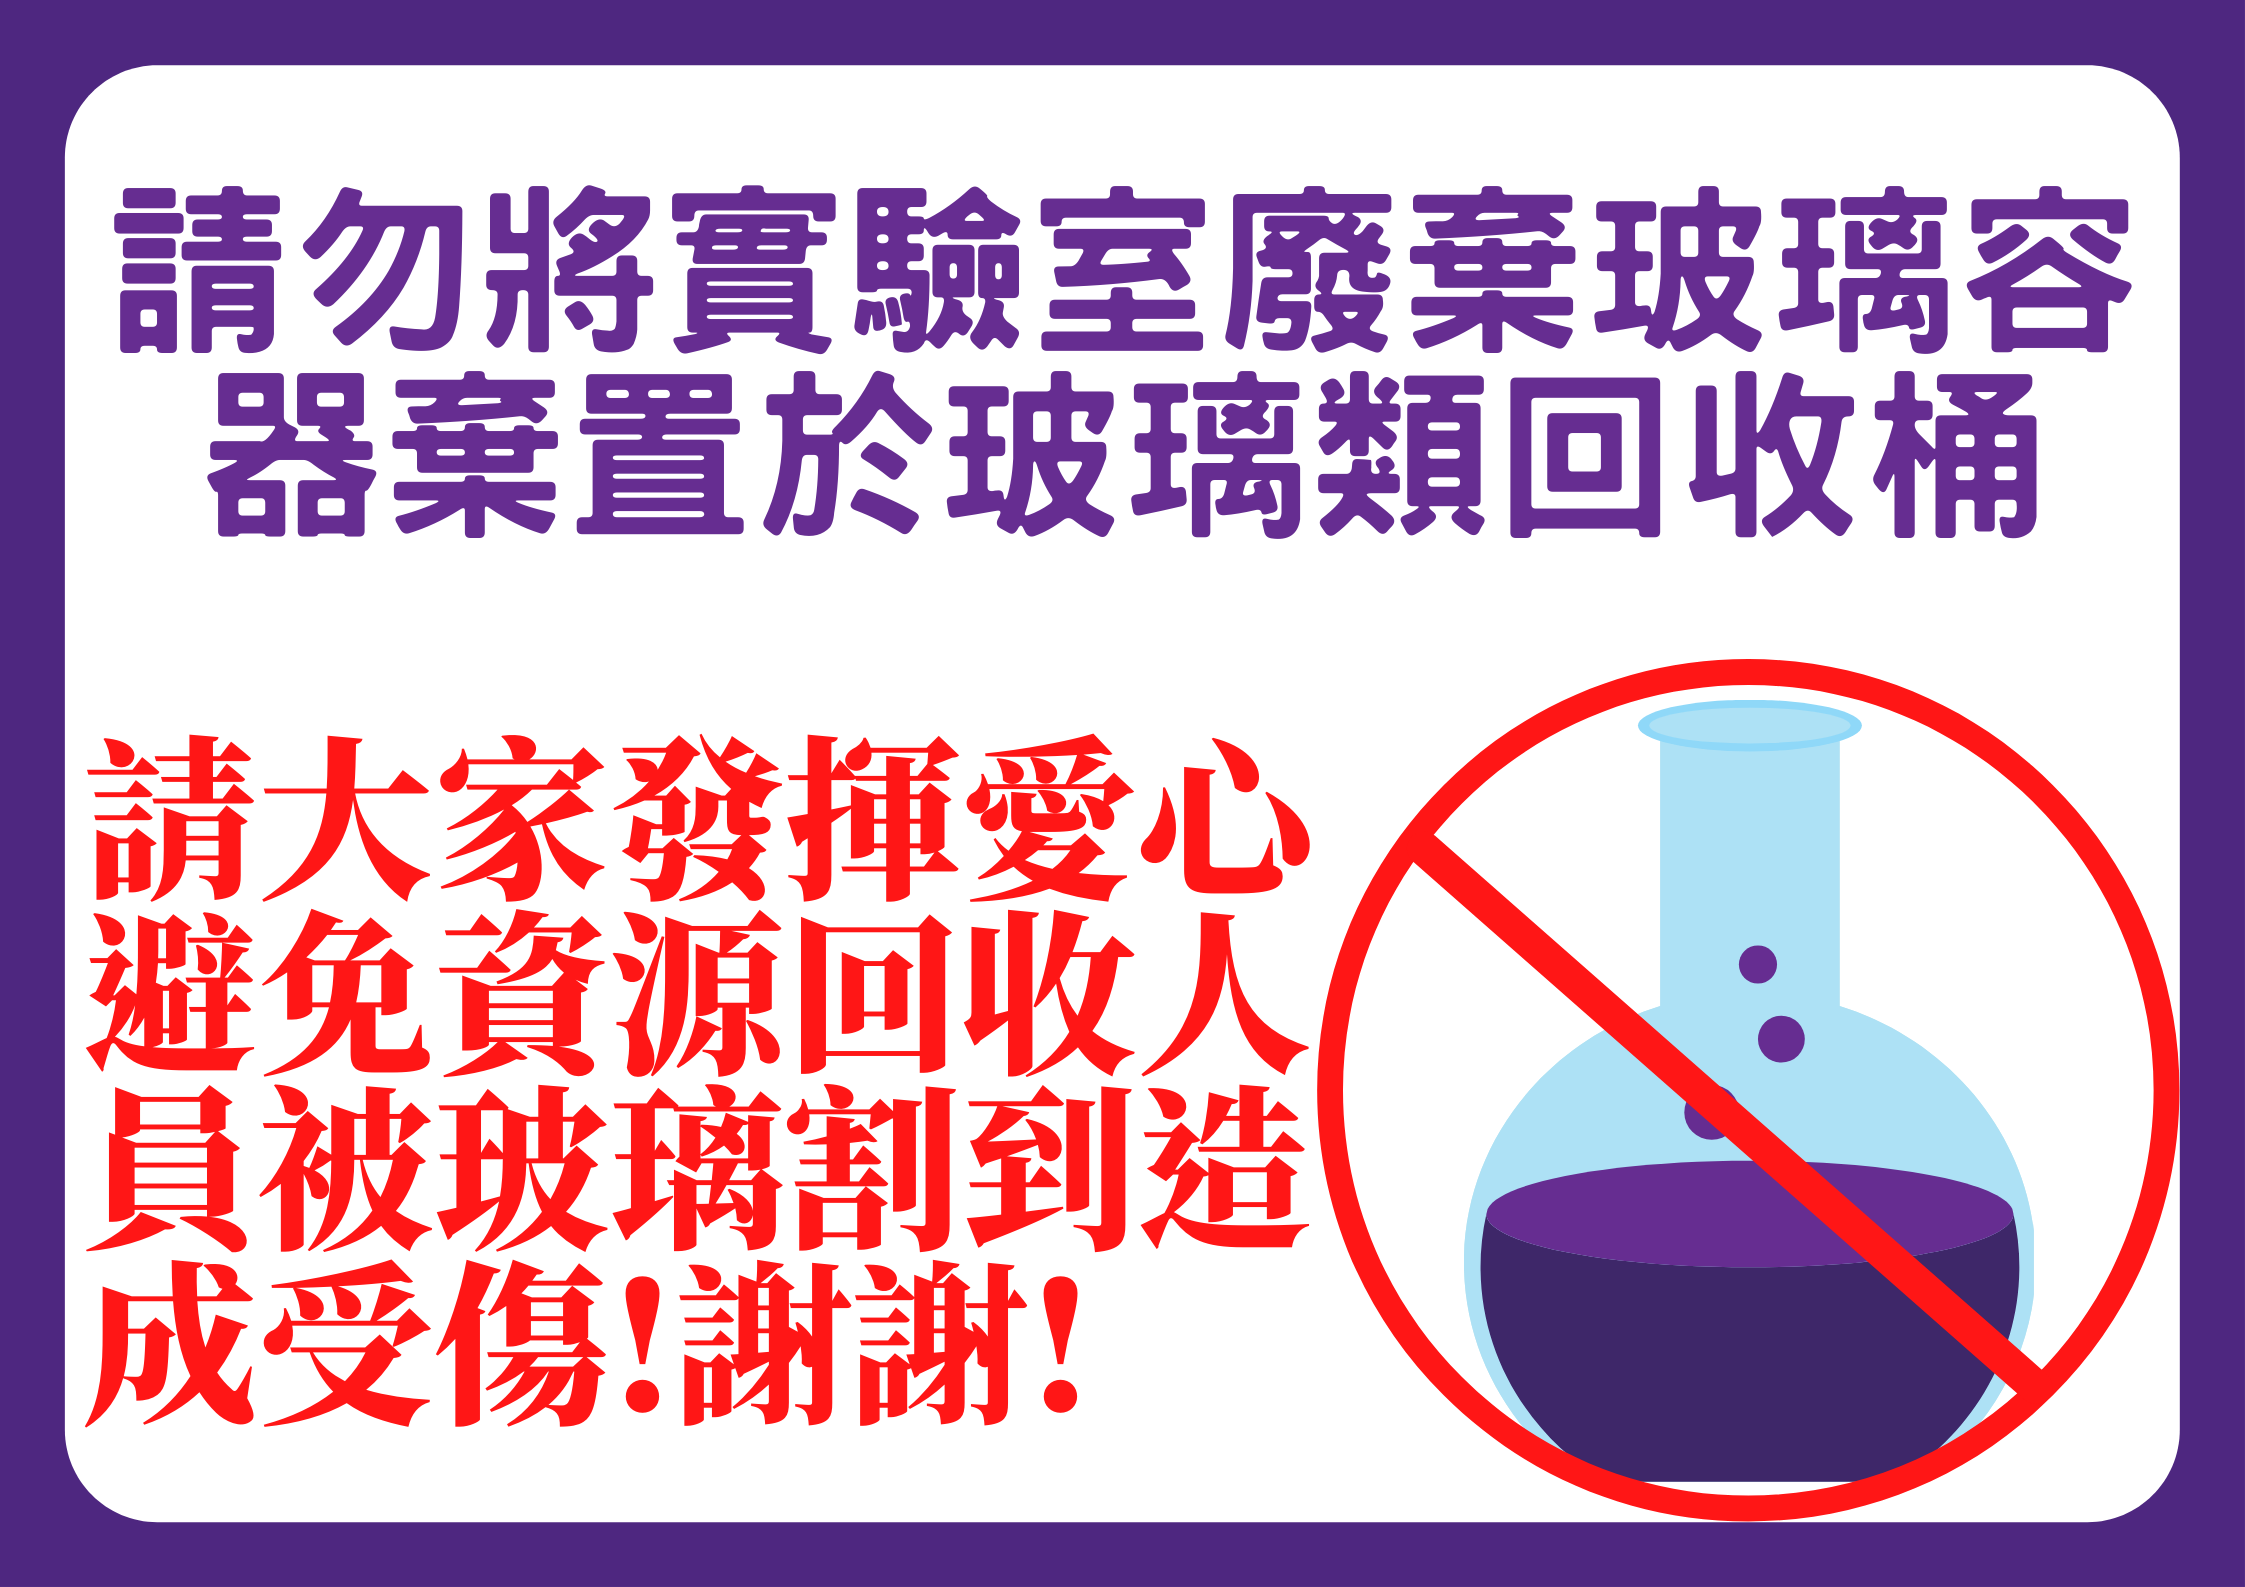 勿將實驗室廢棄玻璃容器棄置於玻璃類回收桶宣導